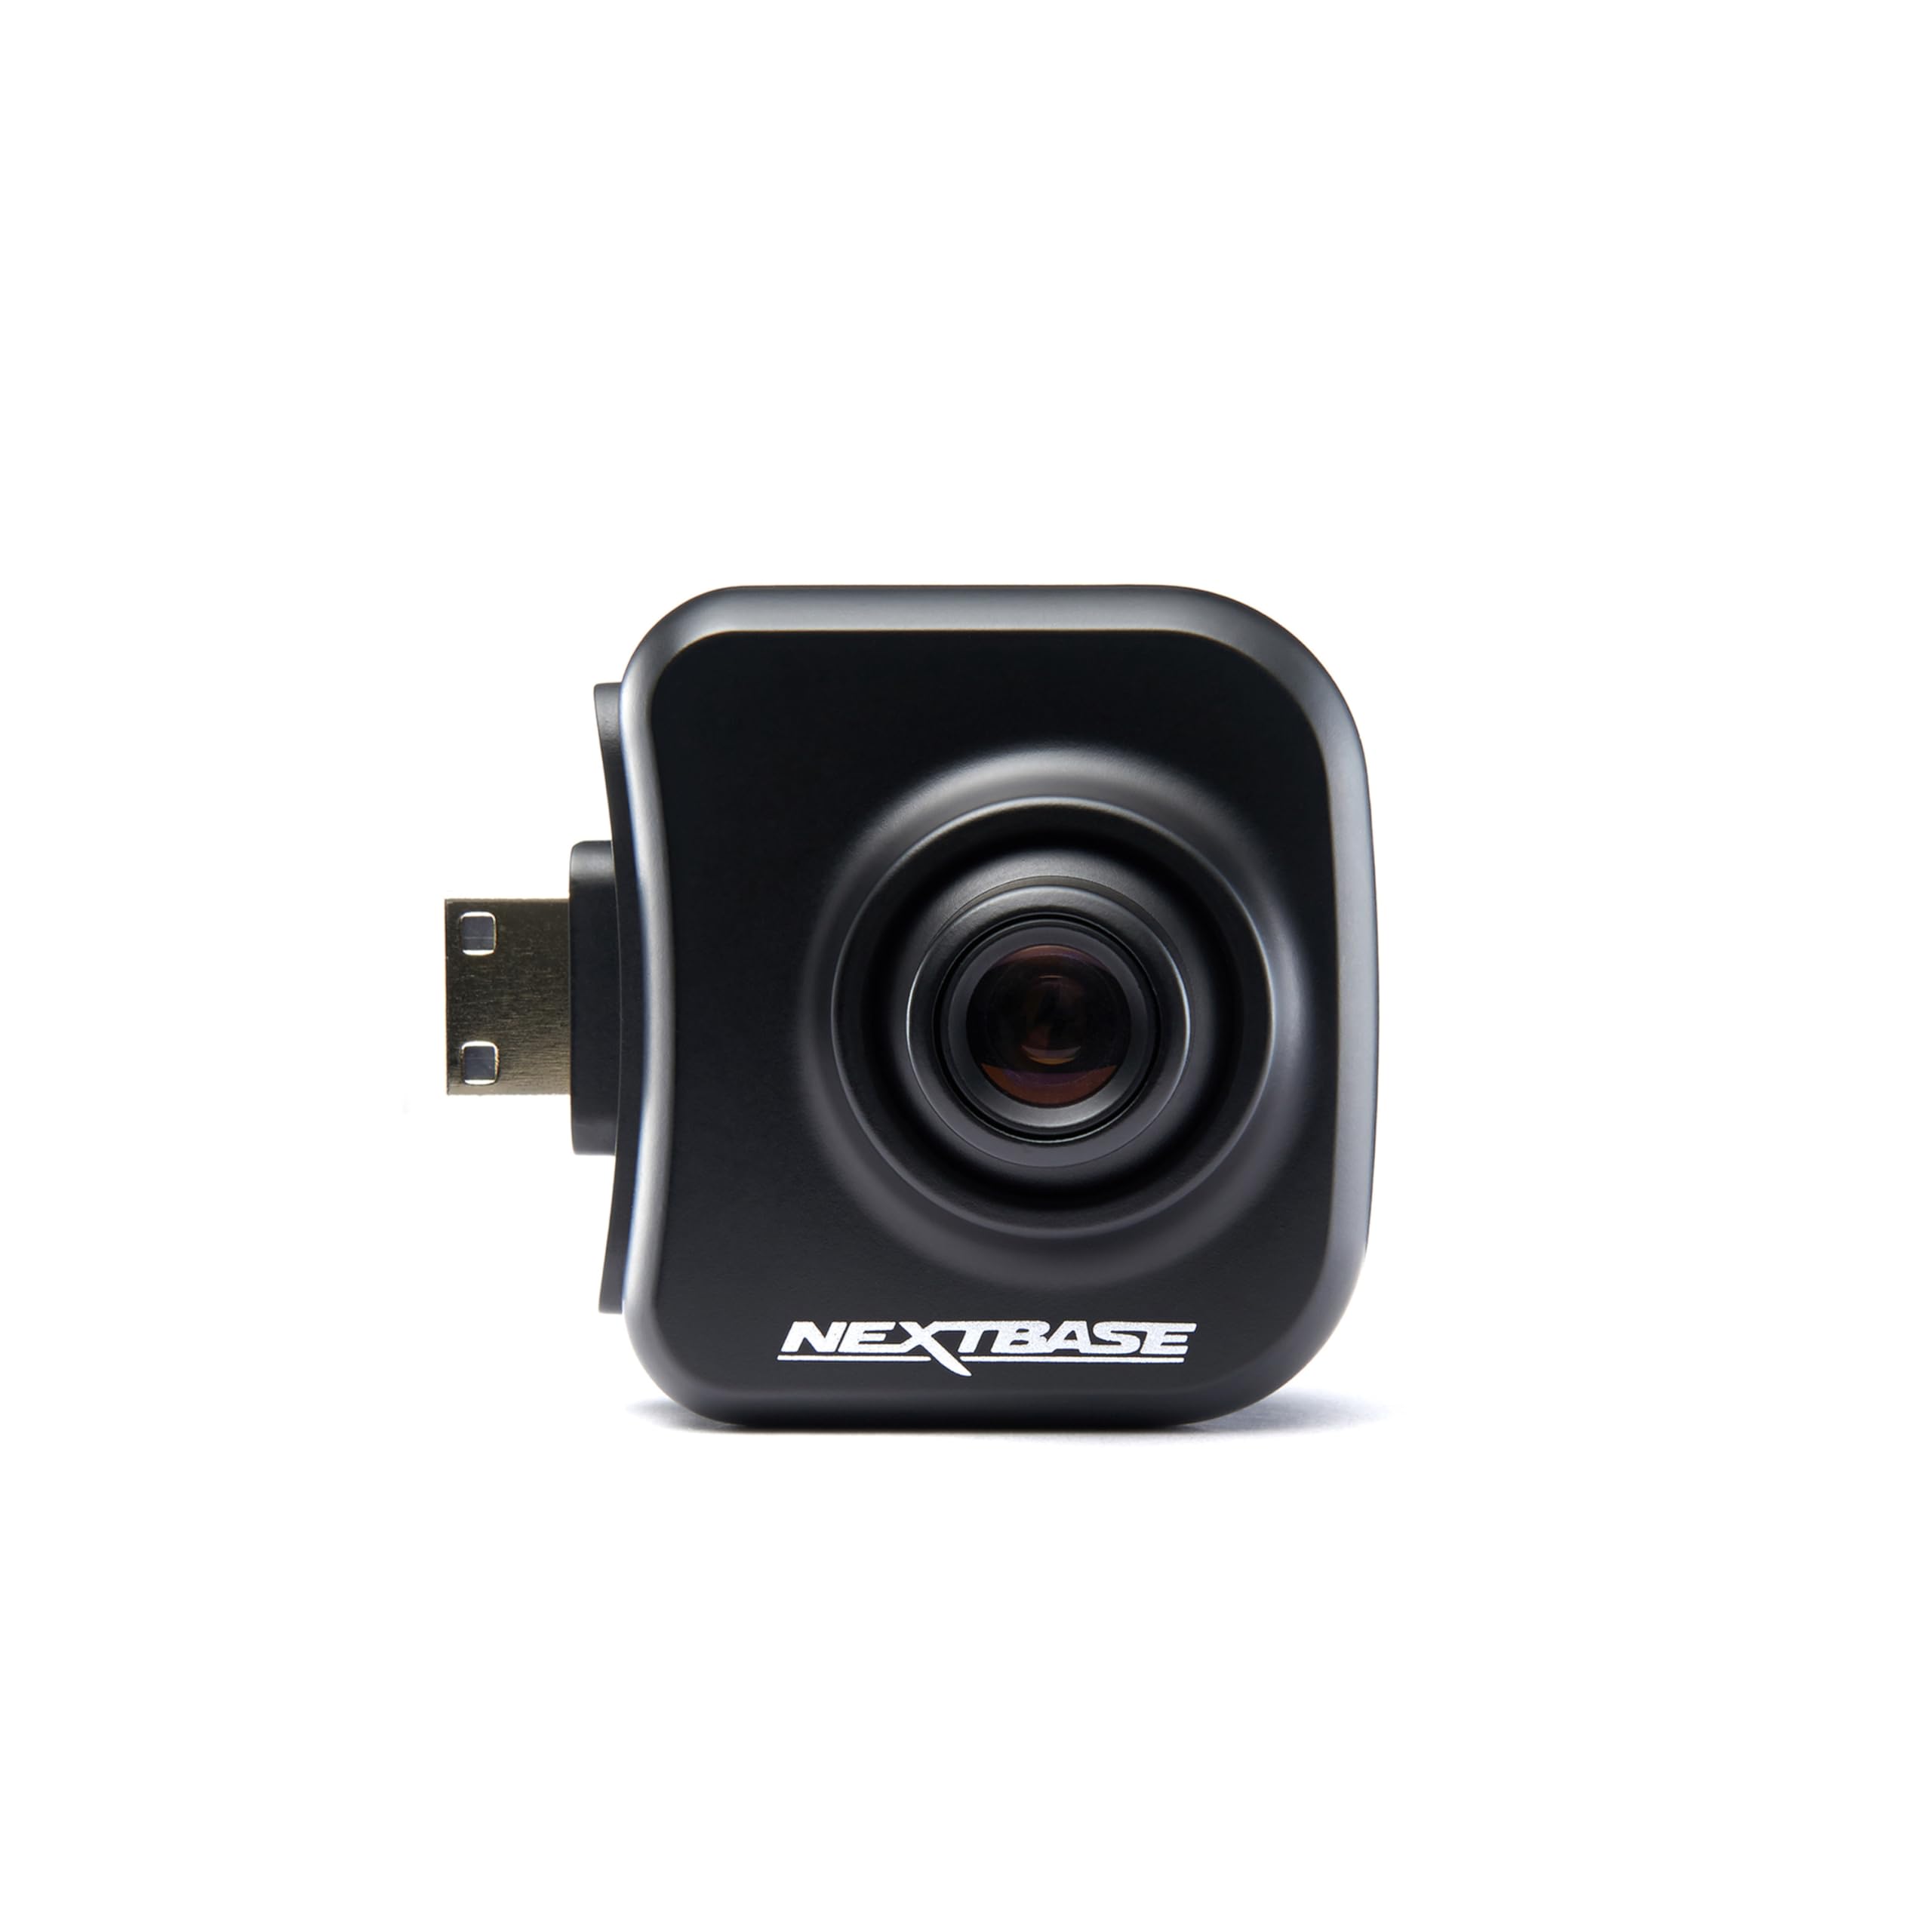 Nextbase Dashcam Hinten Rücksichtkamera für 322GW, 422GW, 522GW und 622GW, HD, 30° Teleobjektiv, bis zu 1080p mit 30 FPS einfache Installation mit nur einem Klick